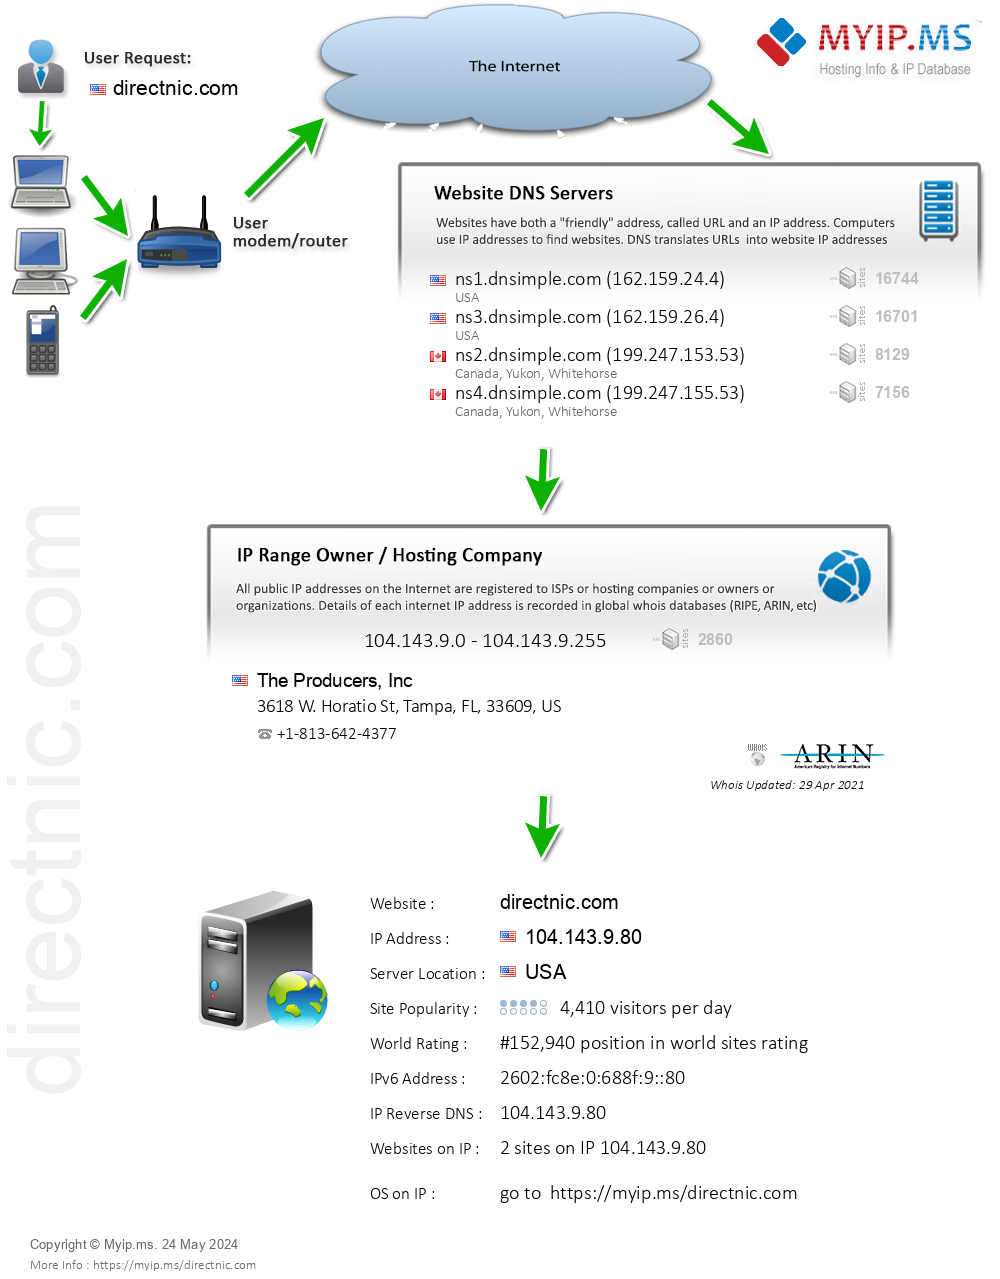 Directnic.com - Website Hosting Visual IP Diagram